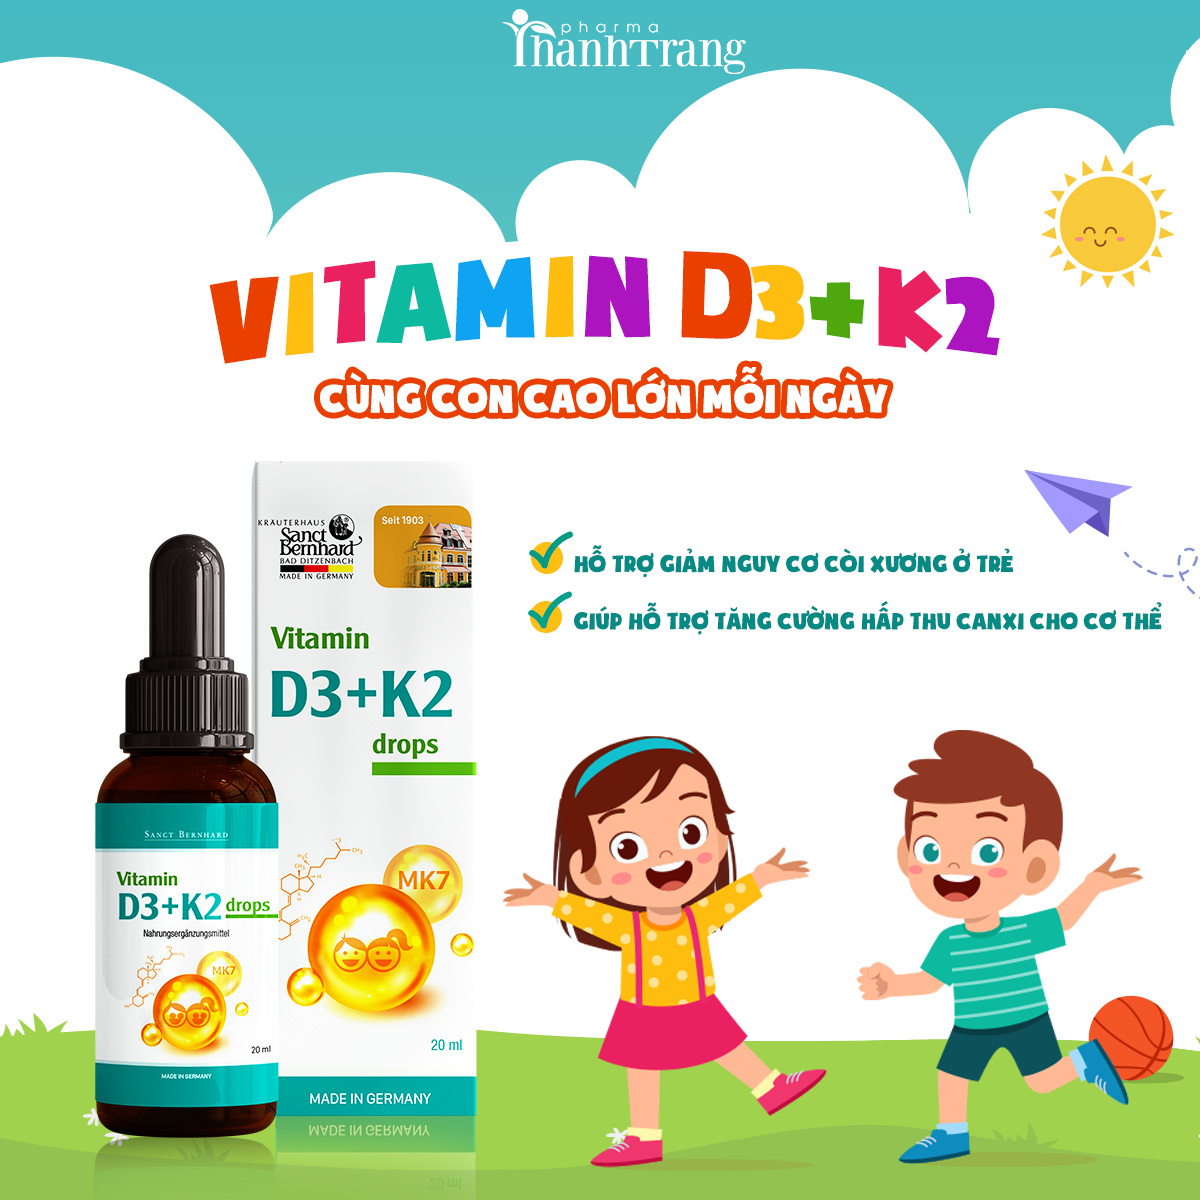 Vitamin d3+k2 drop cùng con cao lớn mỗi ngày